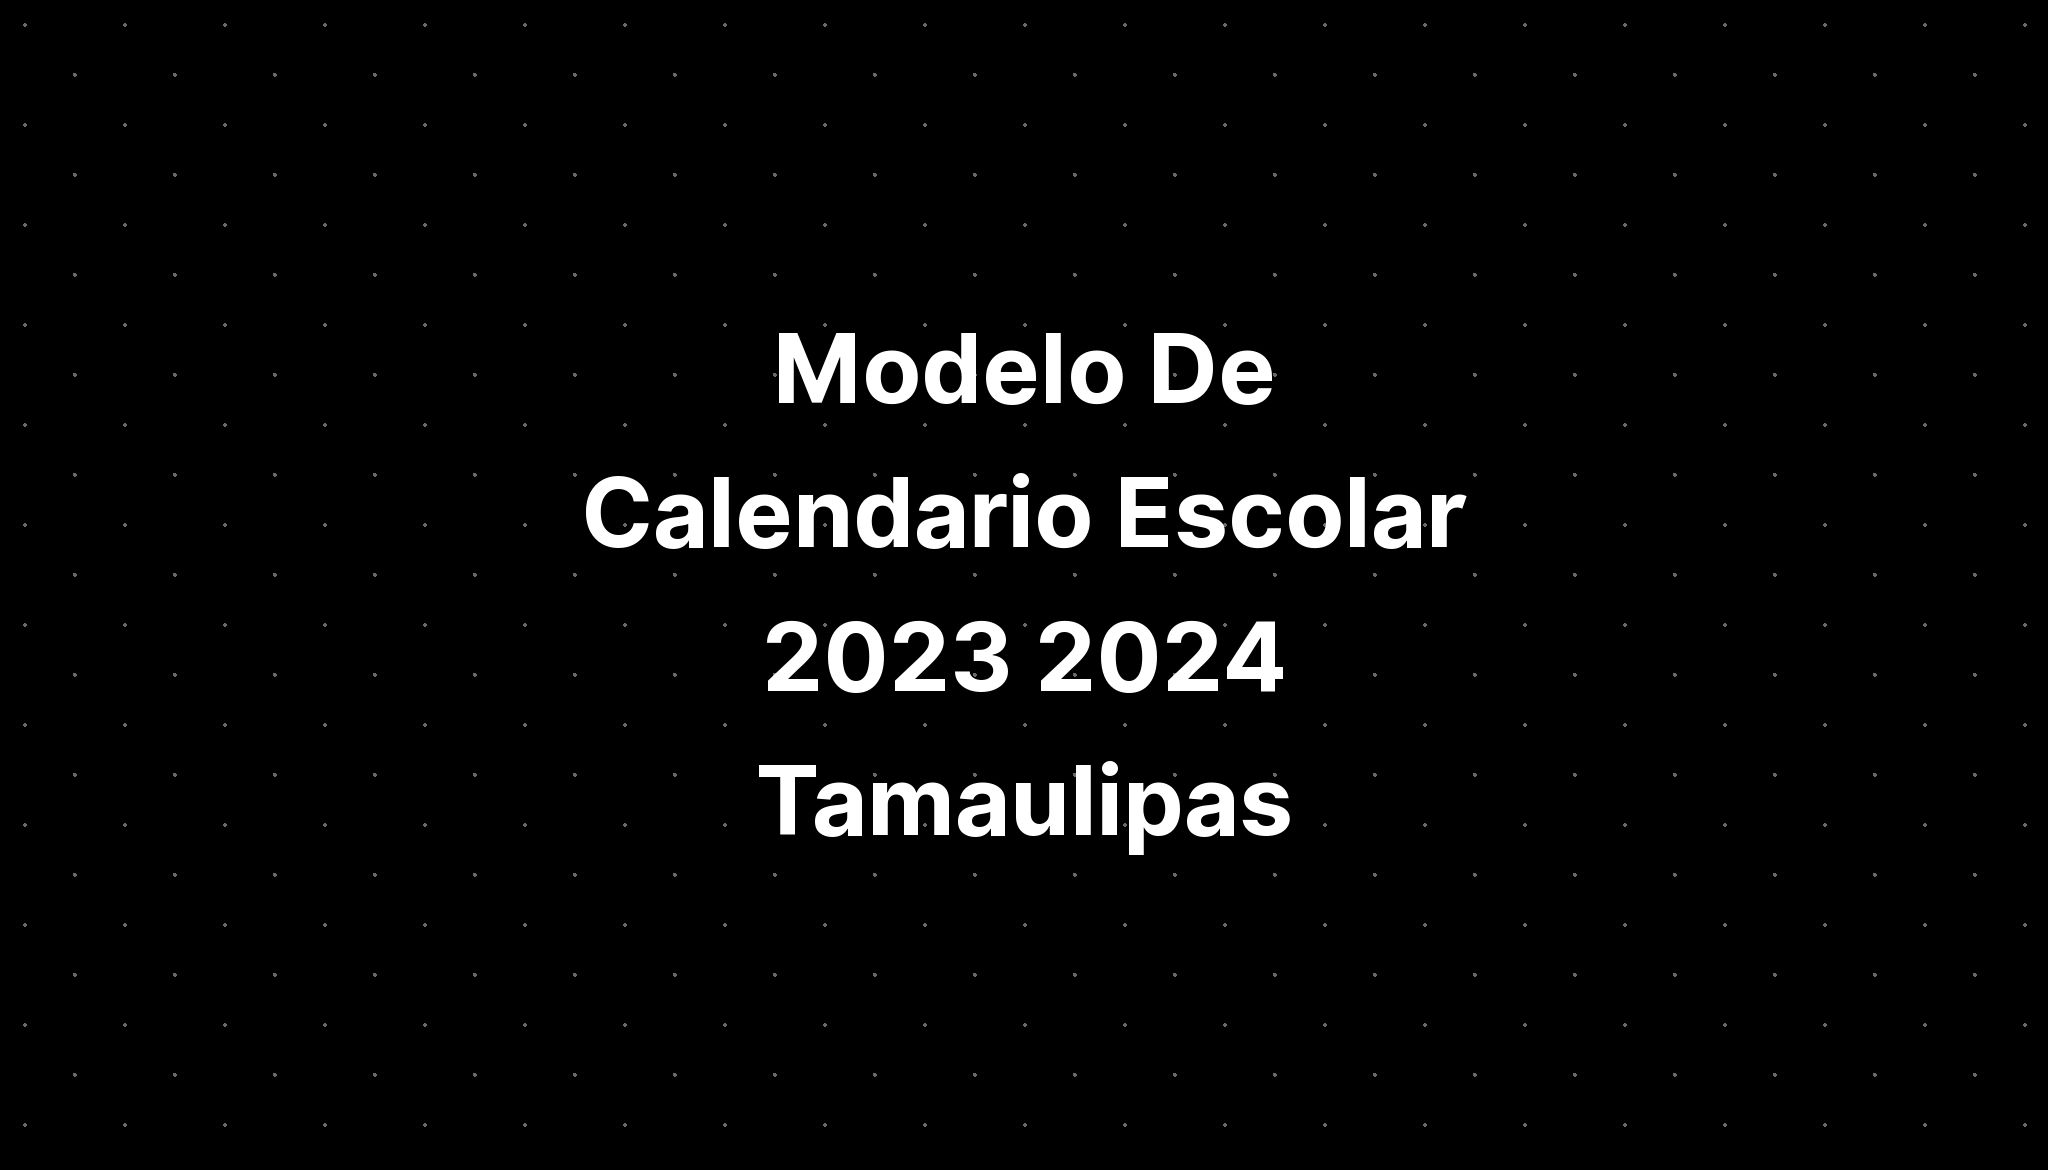 Modelo De Calendario Escolar 2023 2024 Tamaulipas IMAGESEE